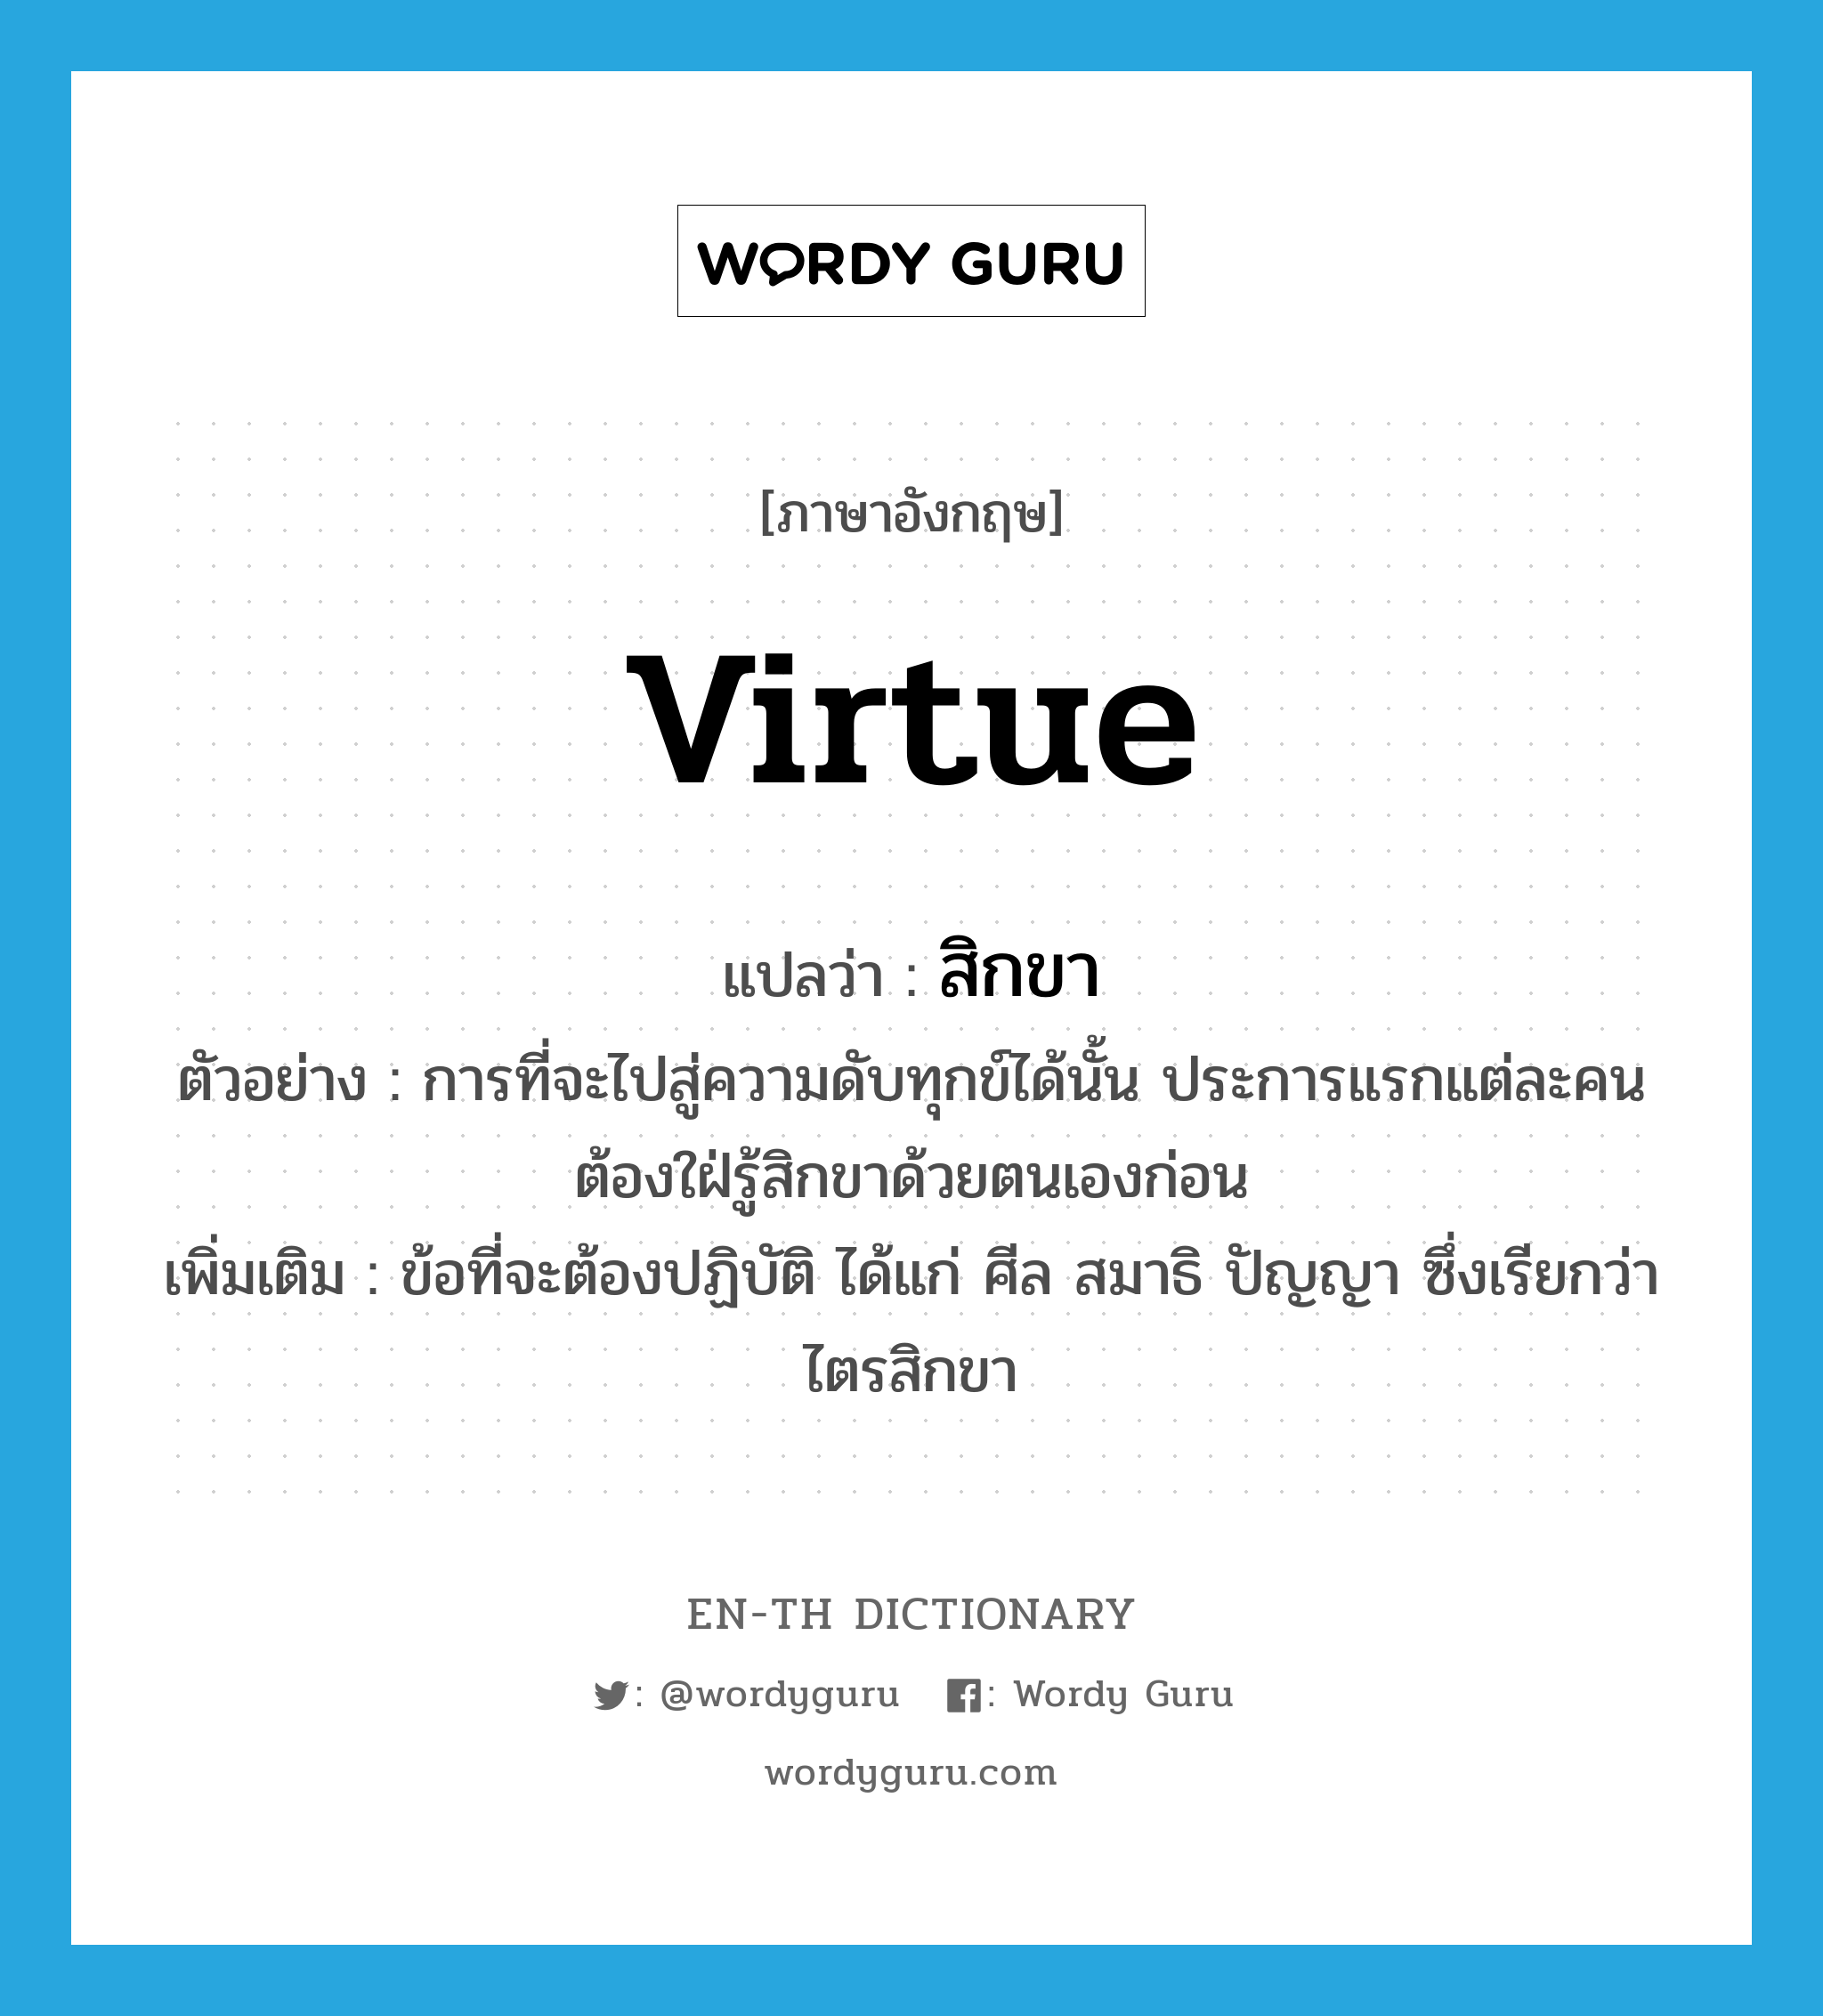 virtue แปลว่า?, คำศัพท์ภาษาอังกฤษ virtue แปลว่า สิกขา ประเภท N ตัวอย่าง การที่จะไปสู่ความดับทุกข์ได้นั้น ประการแรกแต่ละคนต้องใฝ่รู้สิกขาด้วยตนเองก่อน เพิ่มเติม ข้อที่จะต้องปฏิบัติ ได้แก่ ศีล สมาธิ ปัญญา ซึ่งเรียกว่า ไตรสิกขา หมวด N